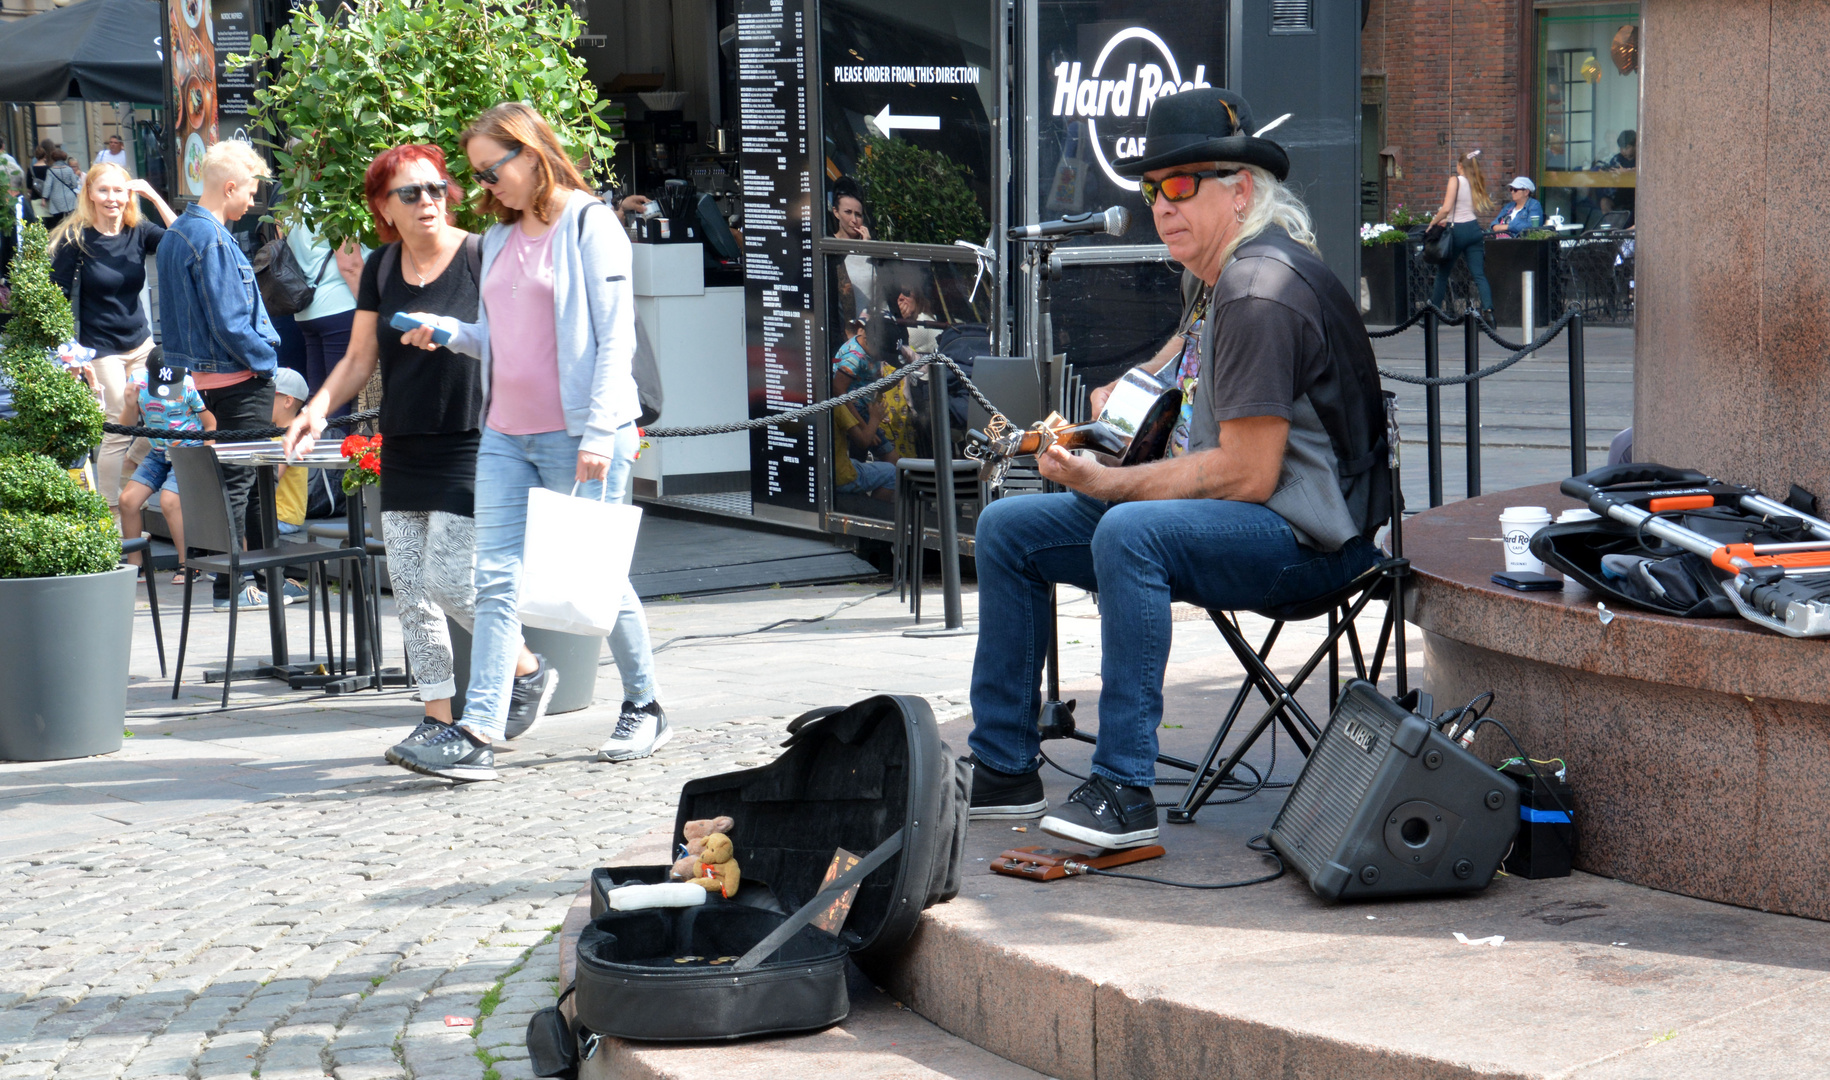 The street musiker